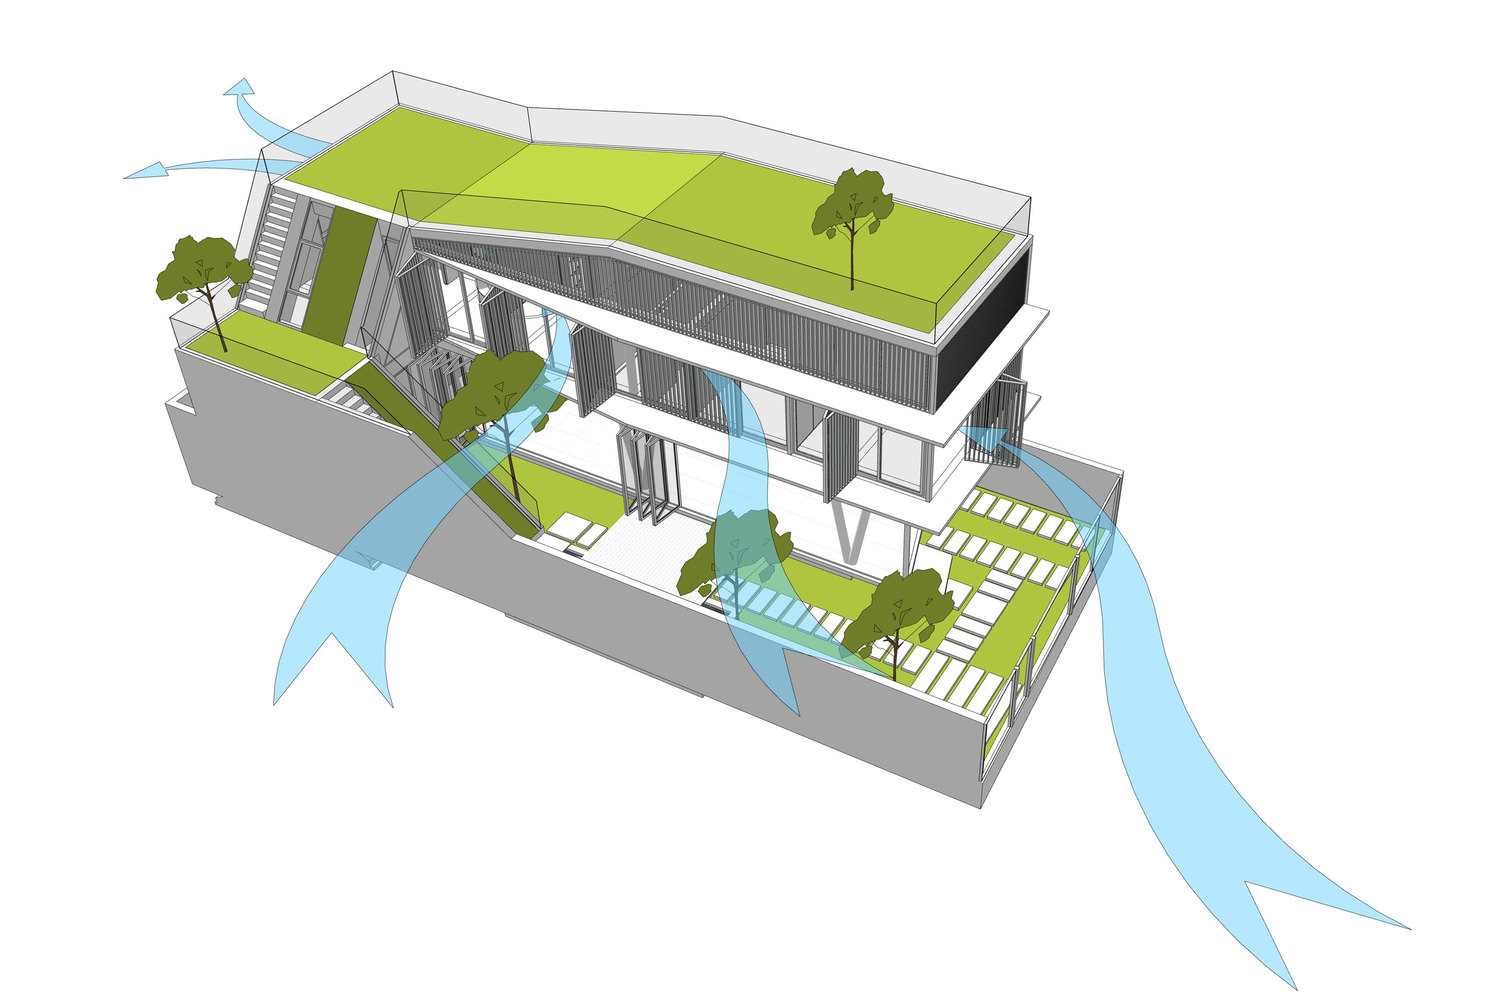 Thiết kế ngôi nhà và phối cảnh lấy sáng, thông gió, tái sử dụng nguồn nước mưa của House of One Piece.